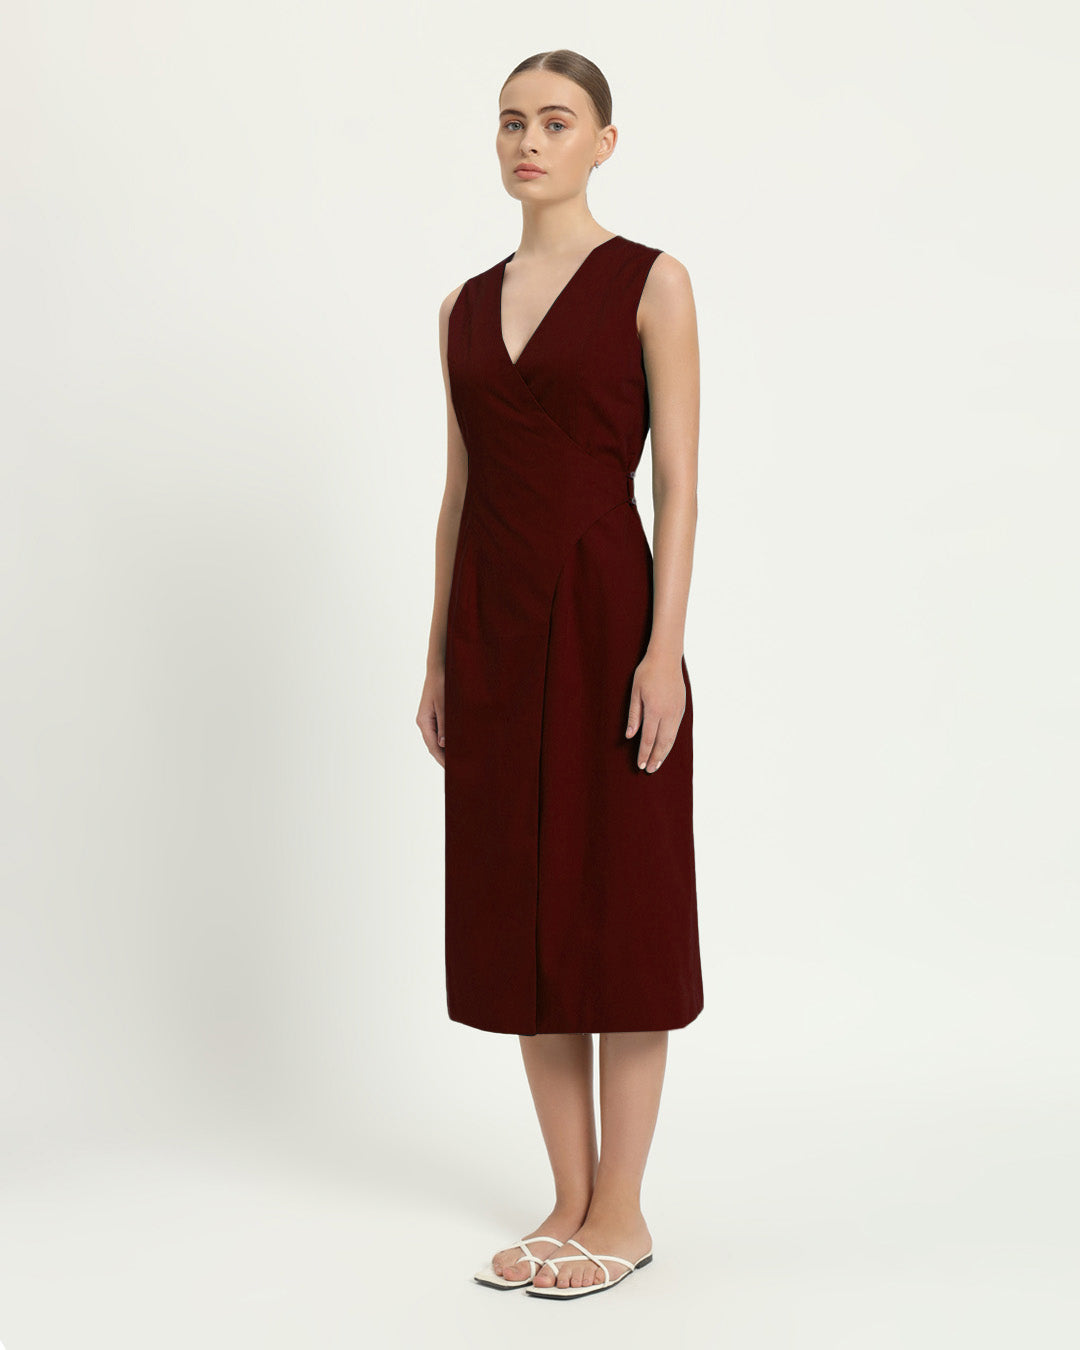 The Aurich Rouge Cotton Dress